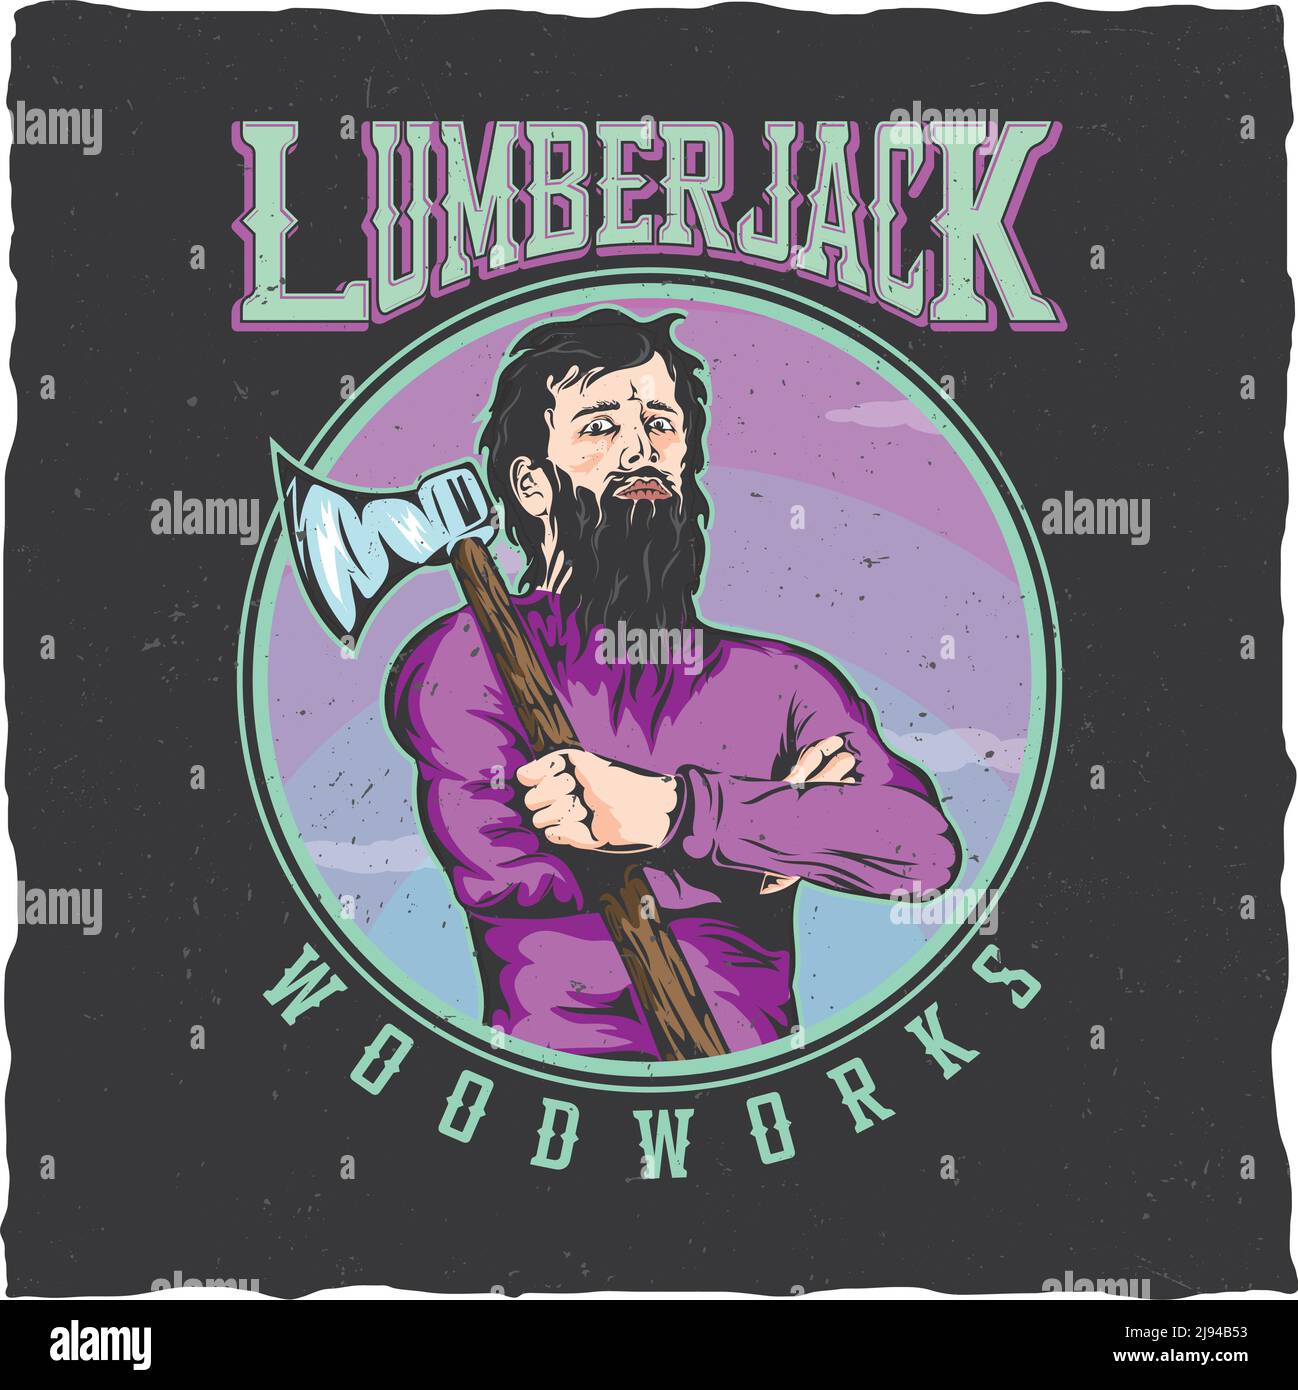 Lumberjack woodworks étiquette design poster avec un homme avec une hache sur son illustration de vecteur d'épaule Illustration de Vecteur